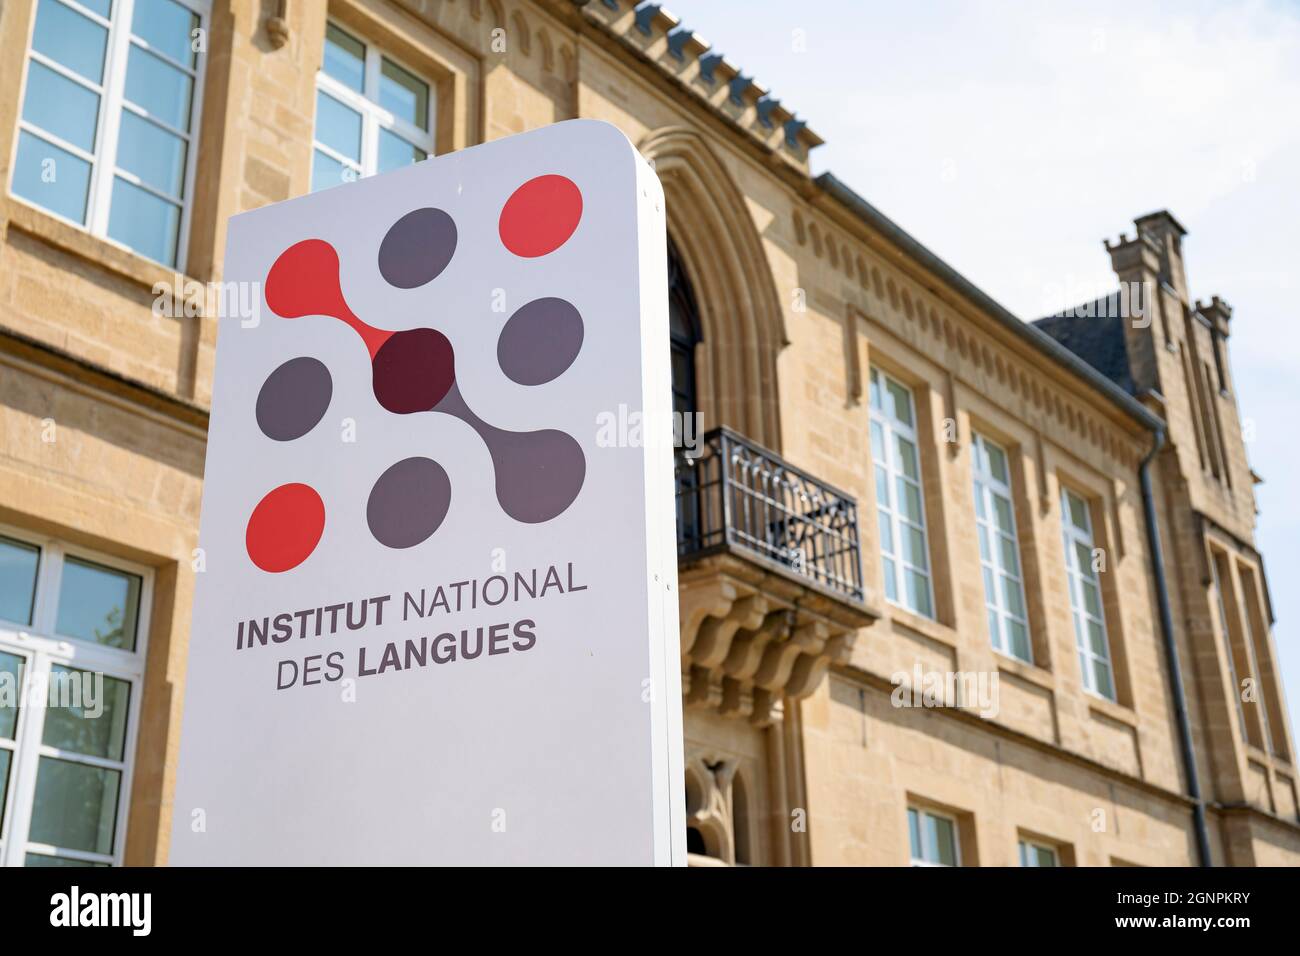 Europa, Luxemburg, Mersch, Institut National des Langues (Nationales Institut für Sprachen) mit Einfahrtsschild Stockfoto